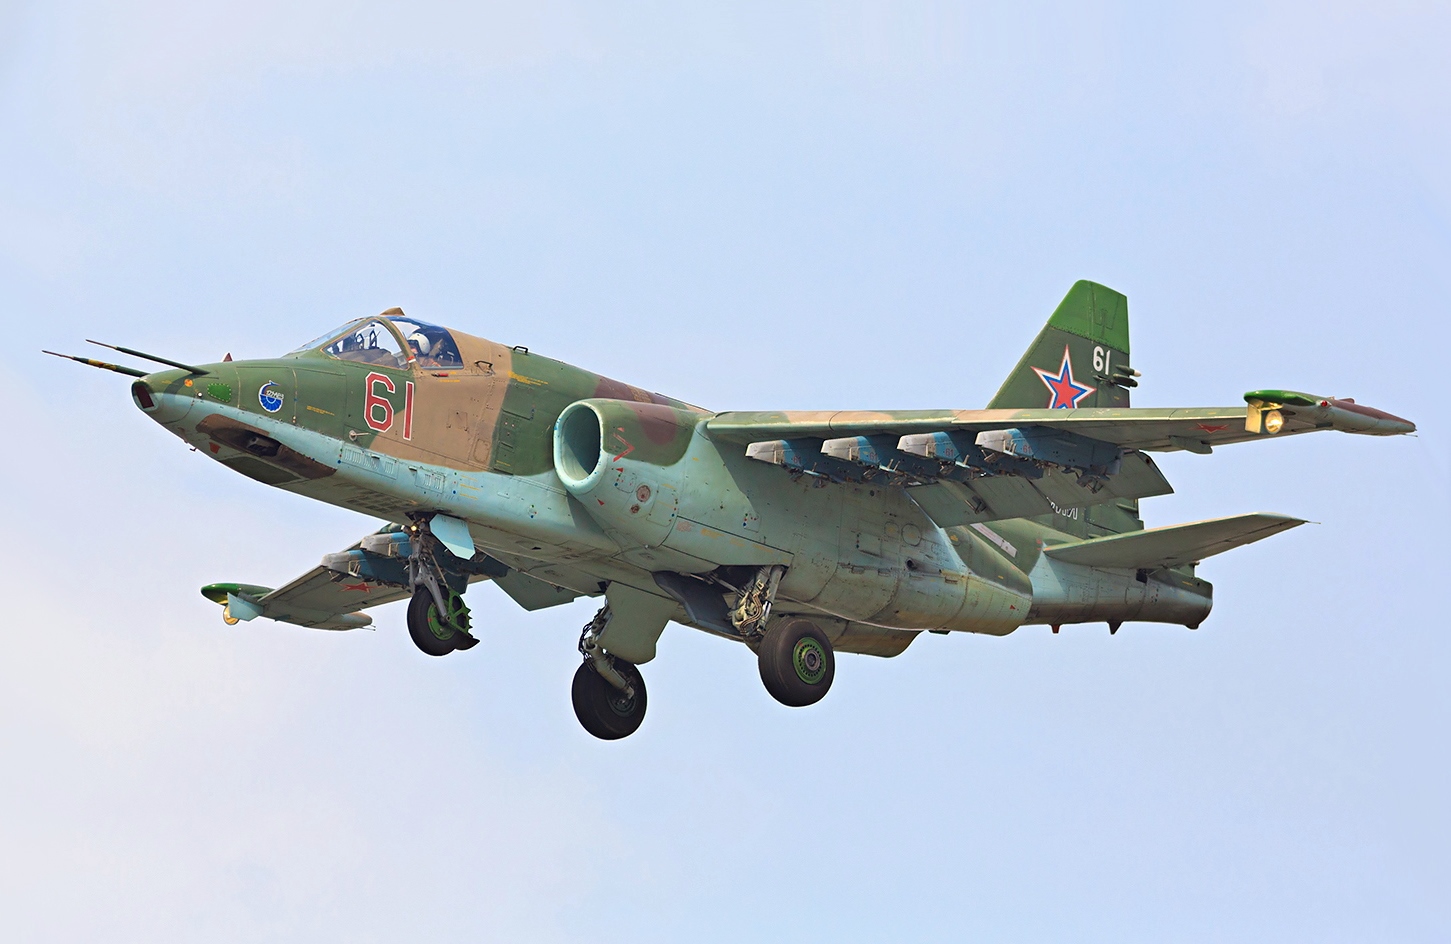 Βίντεο: Ρωσικό Su-25 δέχτηκε πλήγμα από MANPADS αλλά κατάφερε να επιβιώσει και να επιστρέψει στην βάση του